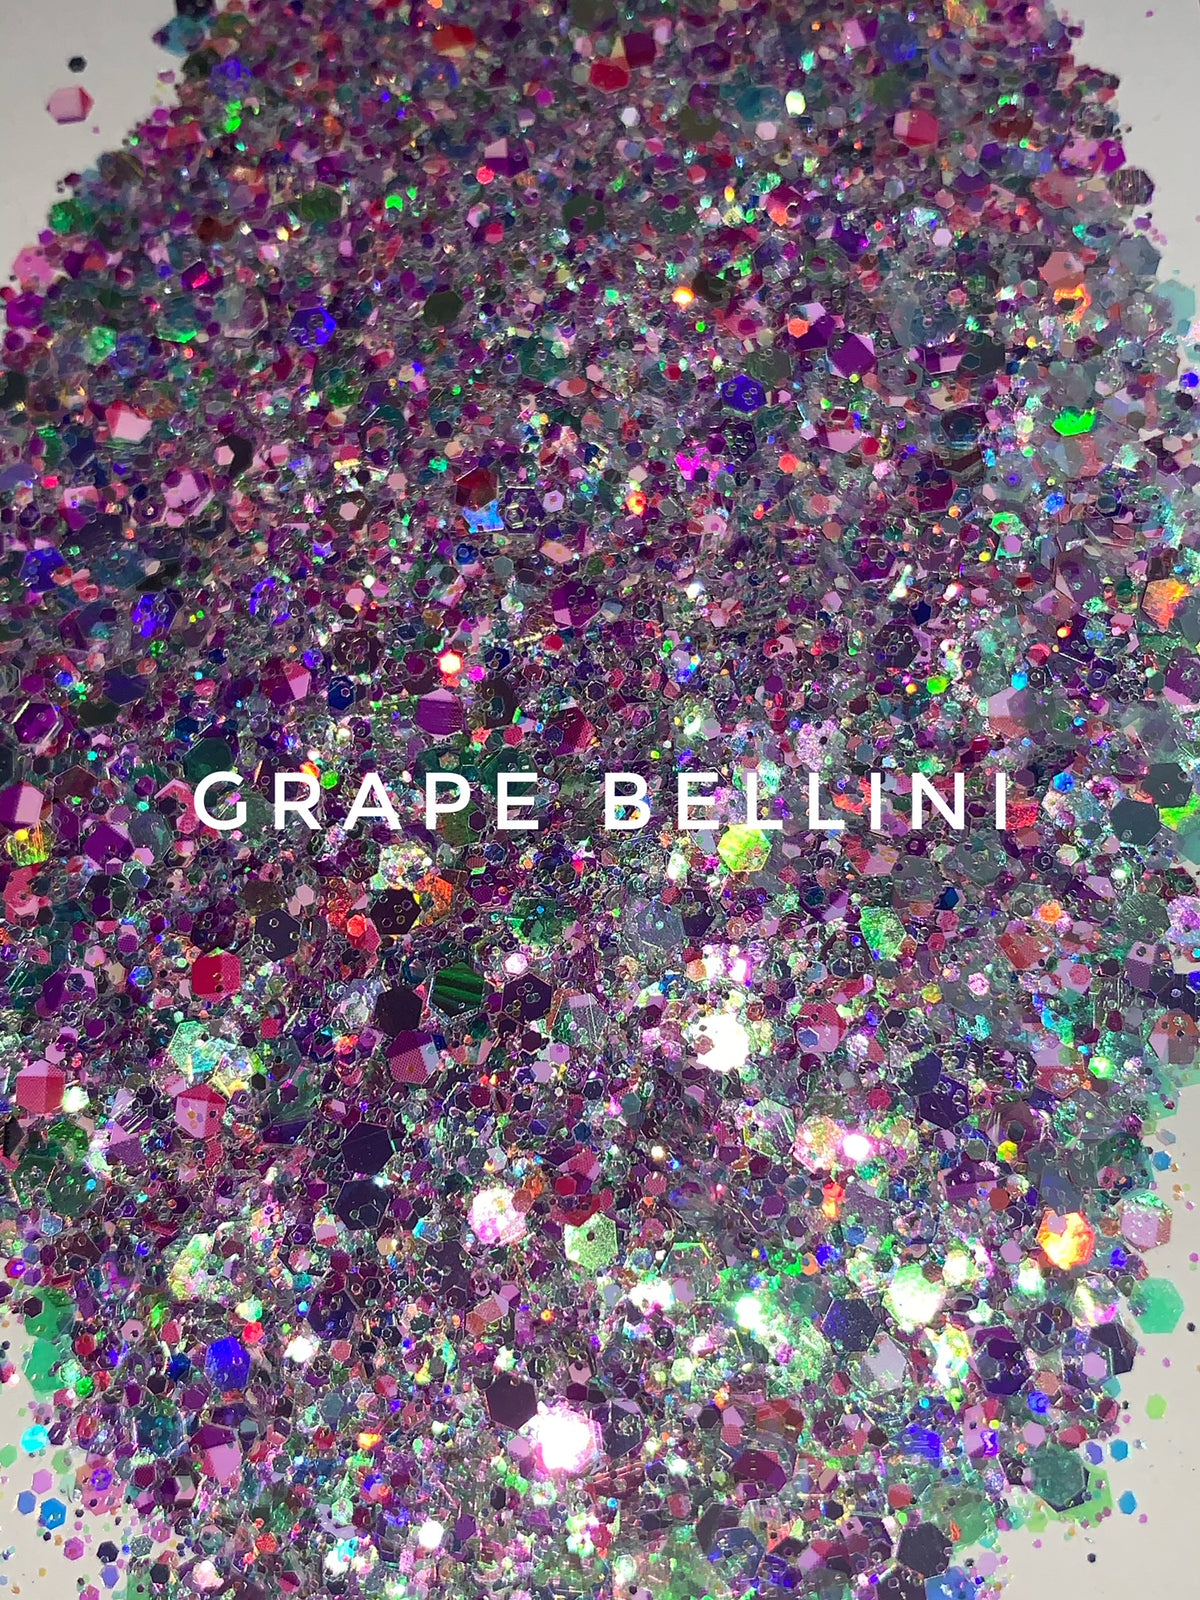 Grape Bellini